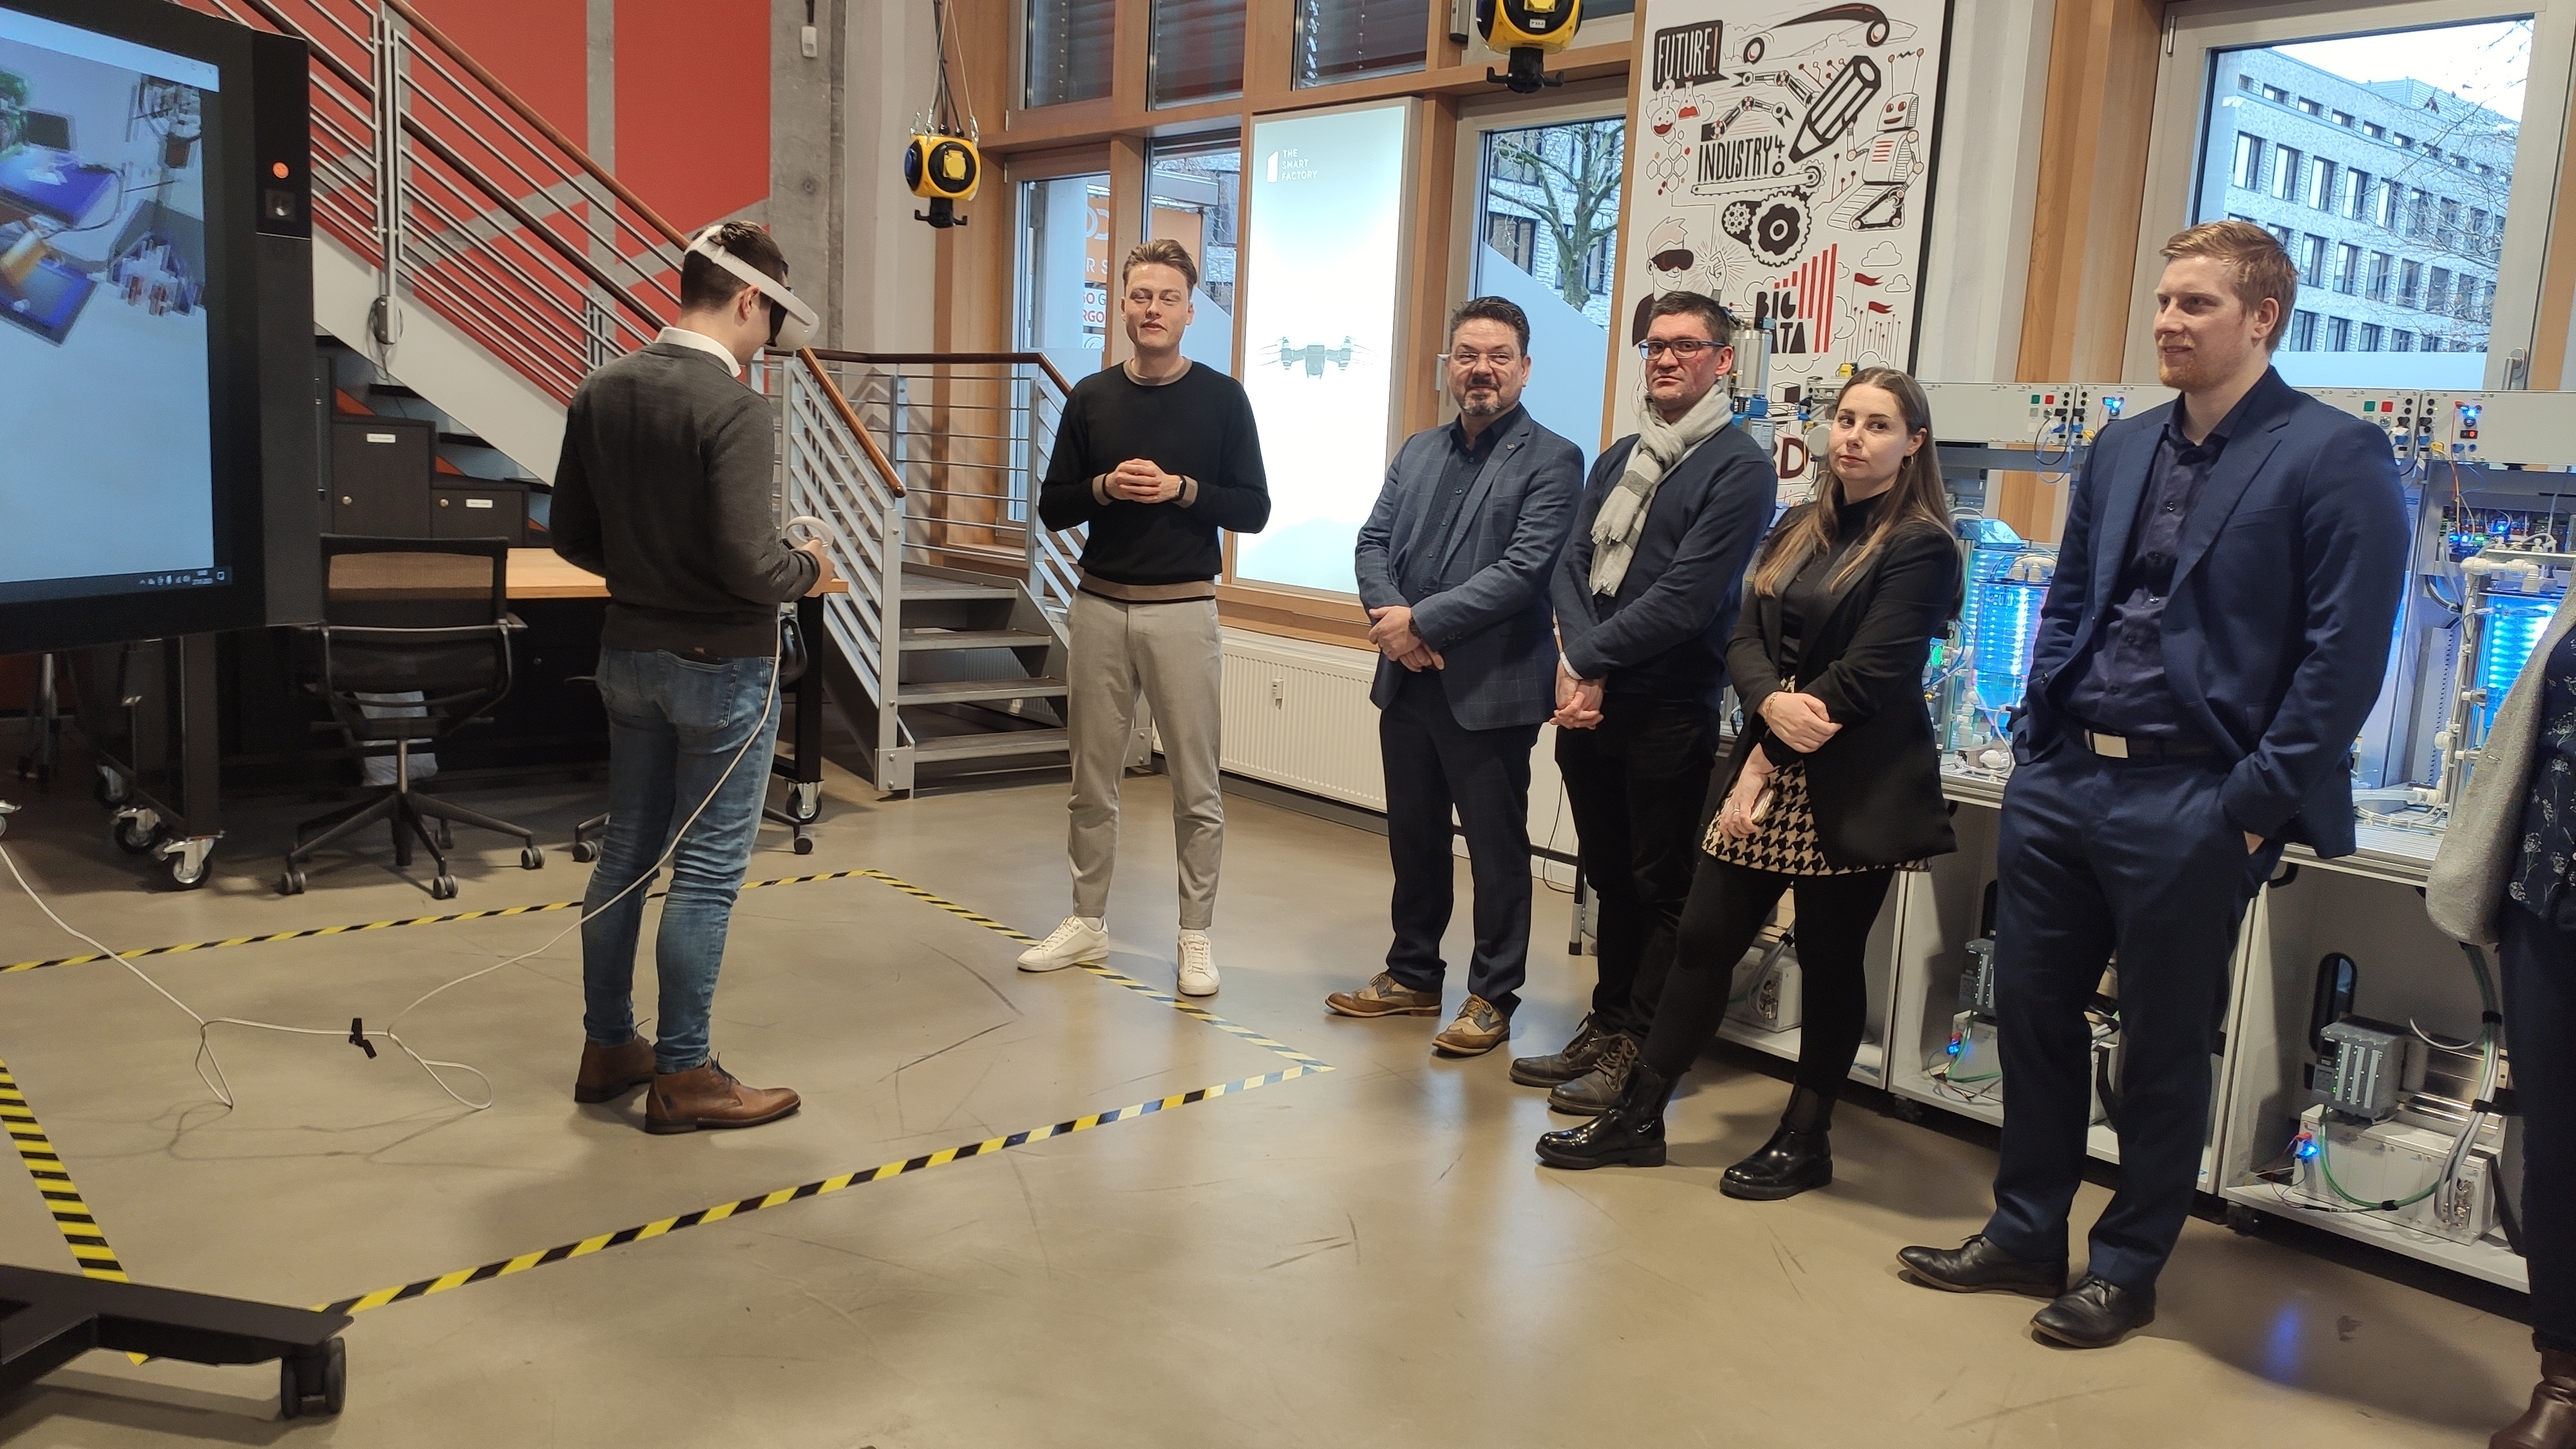 Foto: Exkursion zur Smart Factory von Deloitte in Düsseldorf, Studierende benutzen die VR-Brille (Foto: L.Langer)